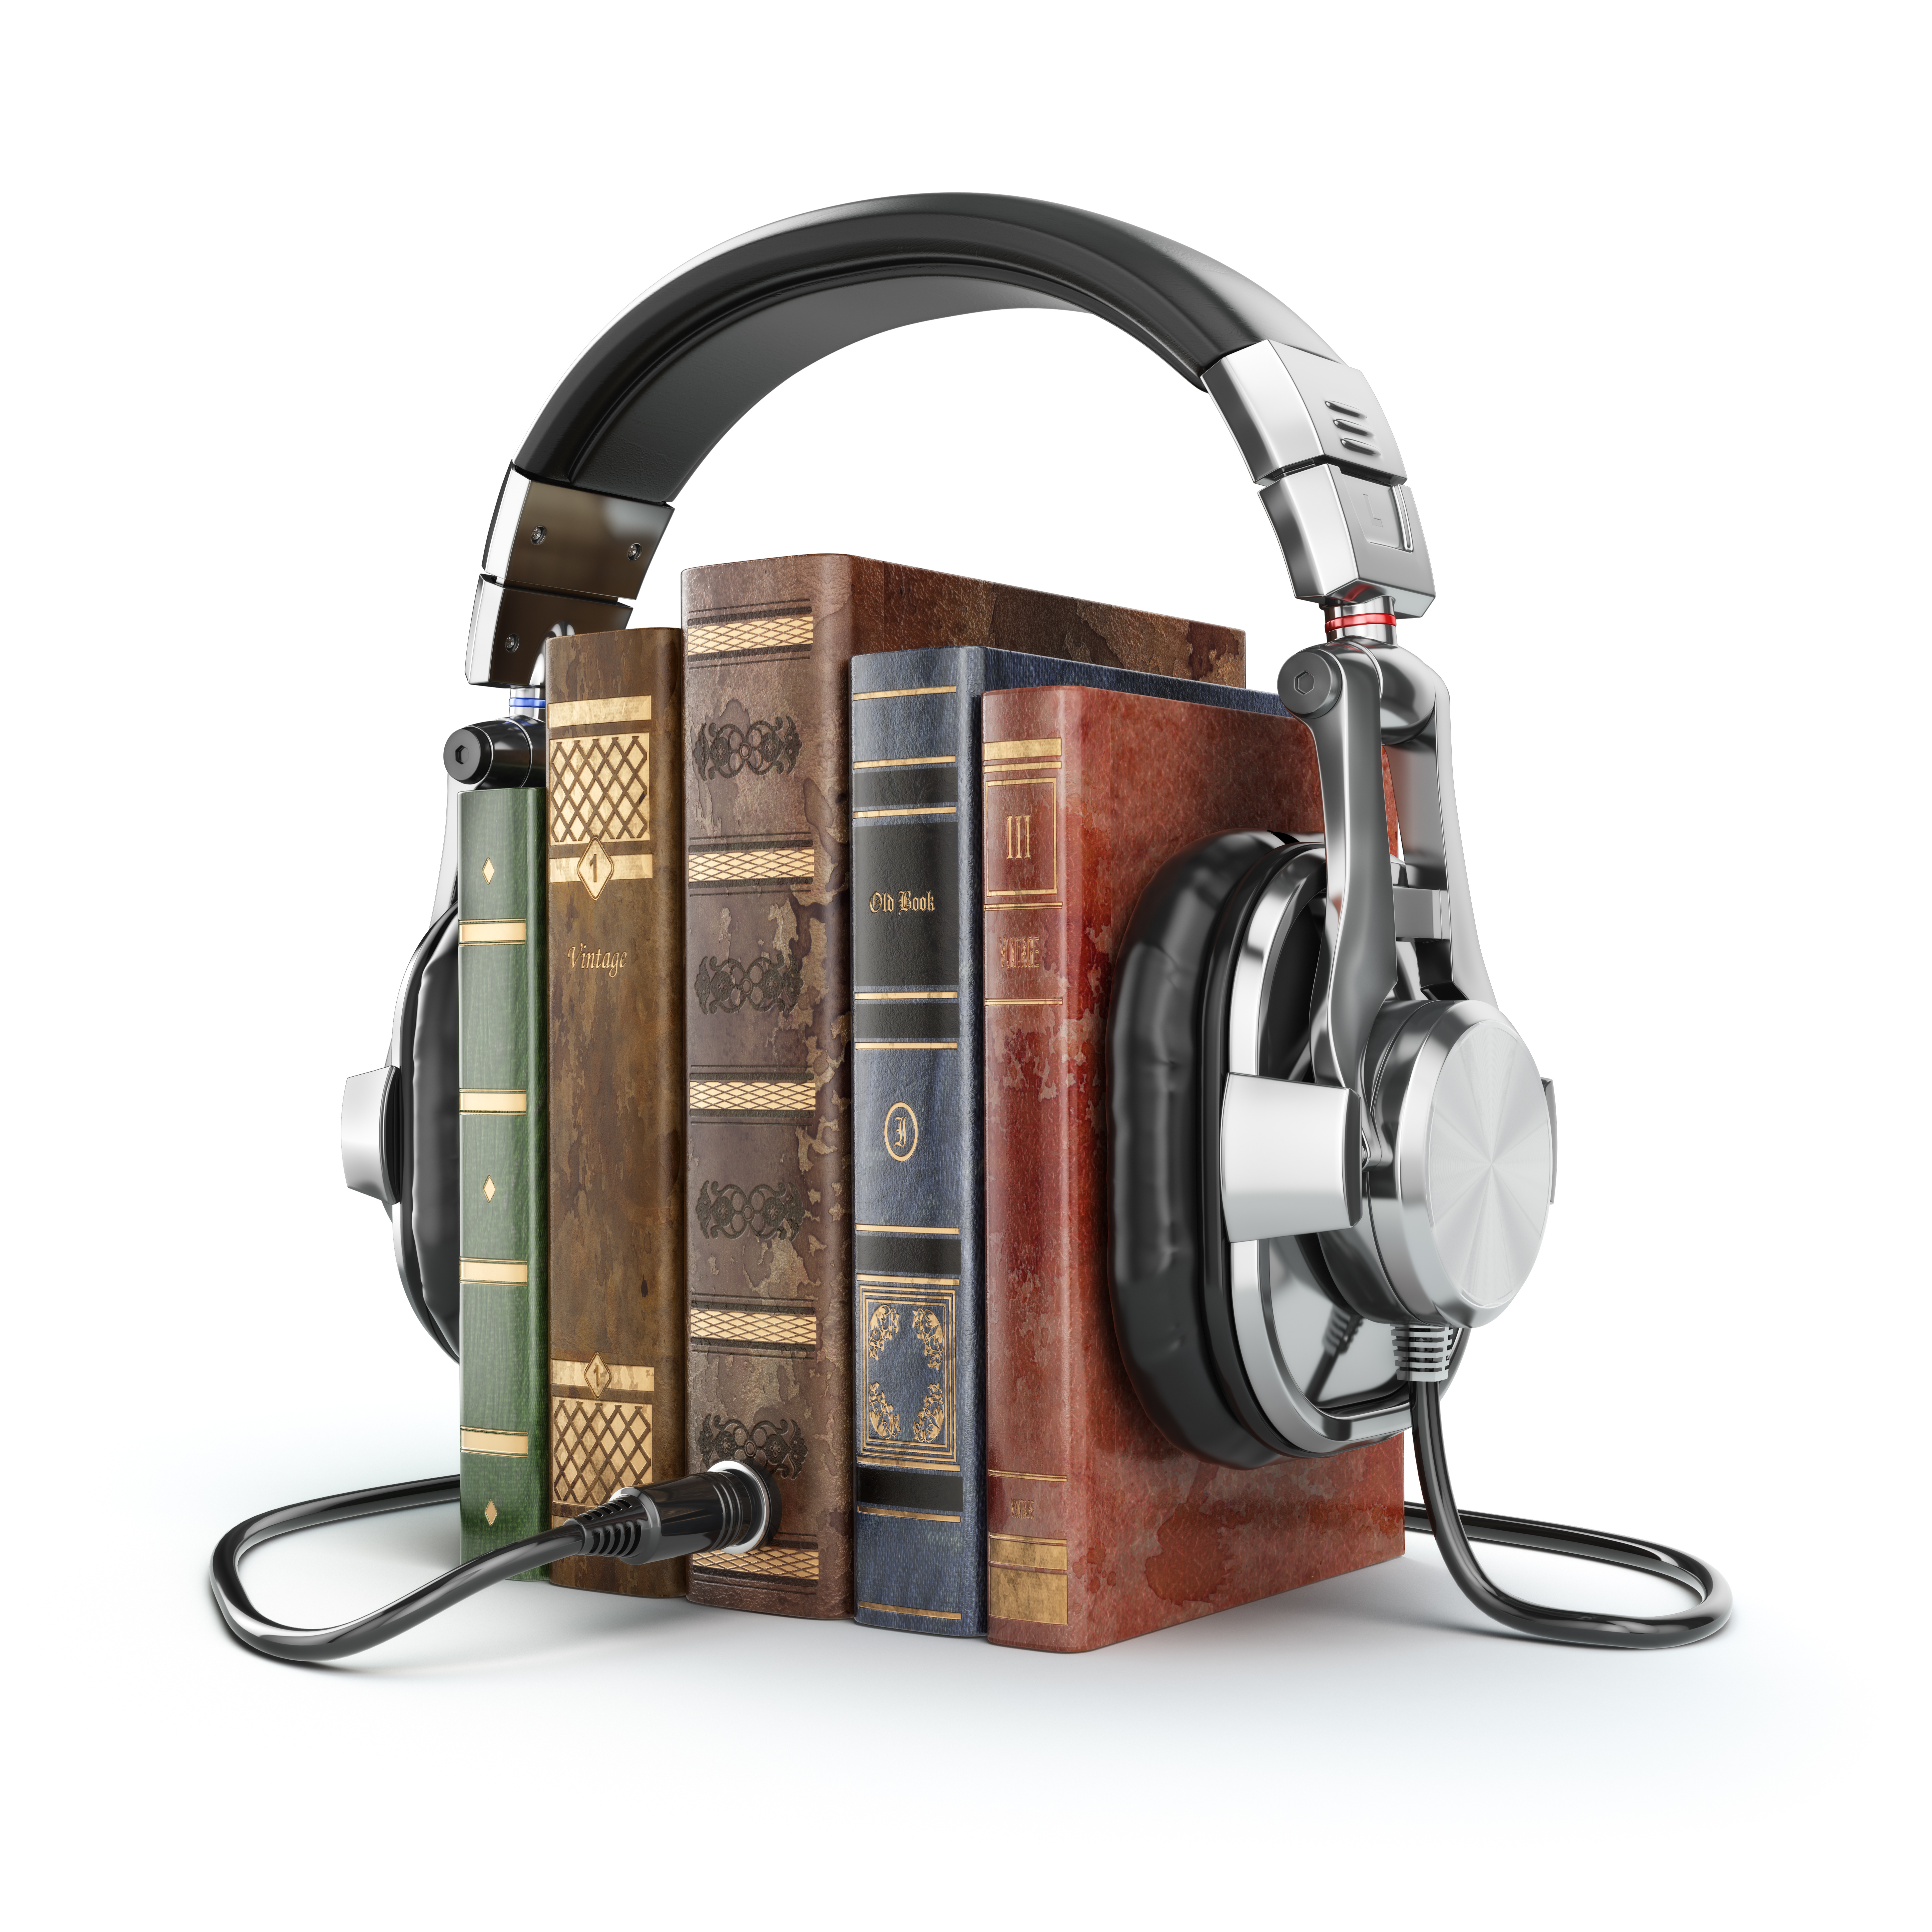 Бесплатные библиотеки аудиокниг слушать